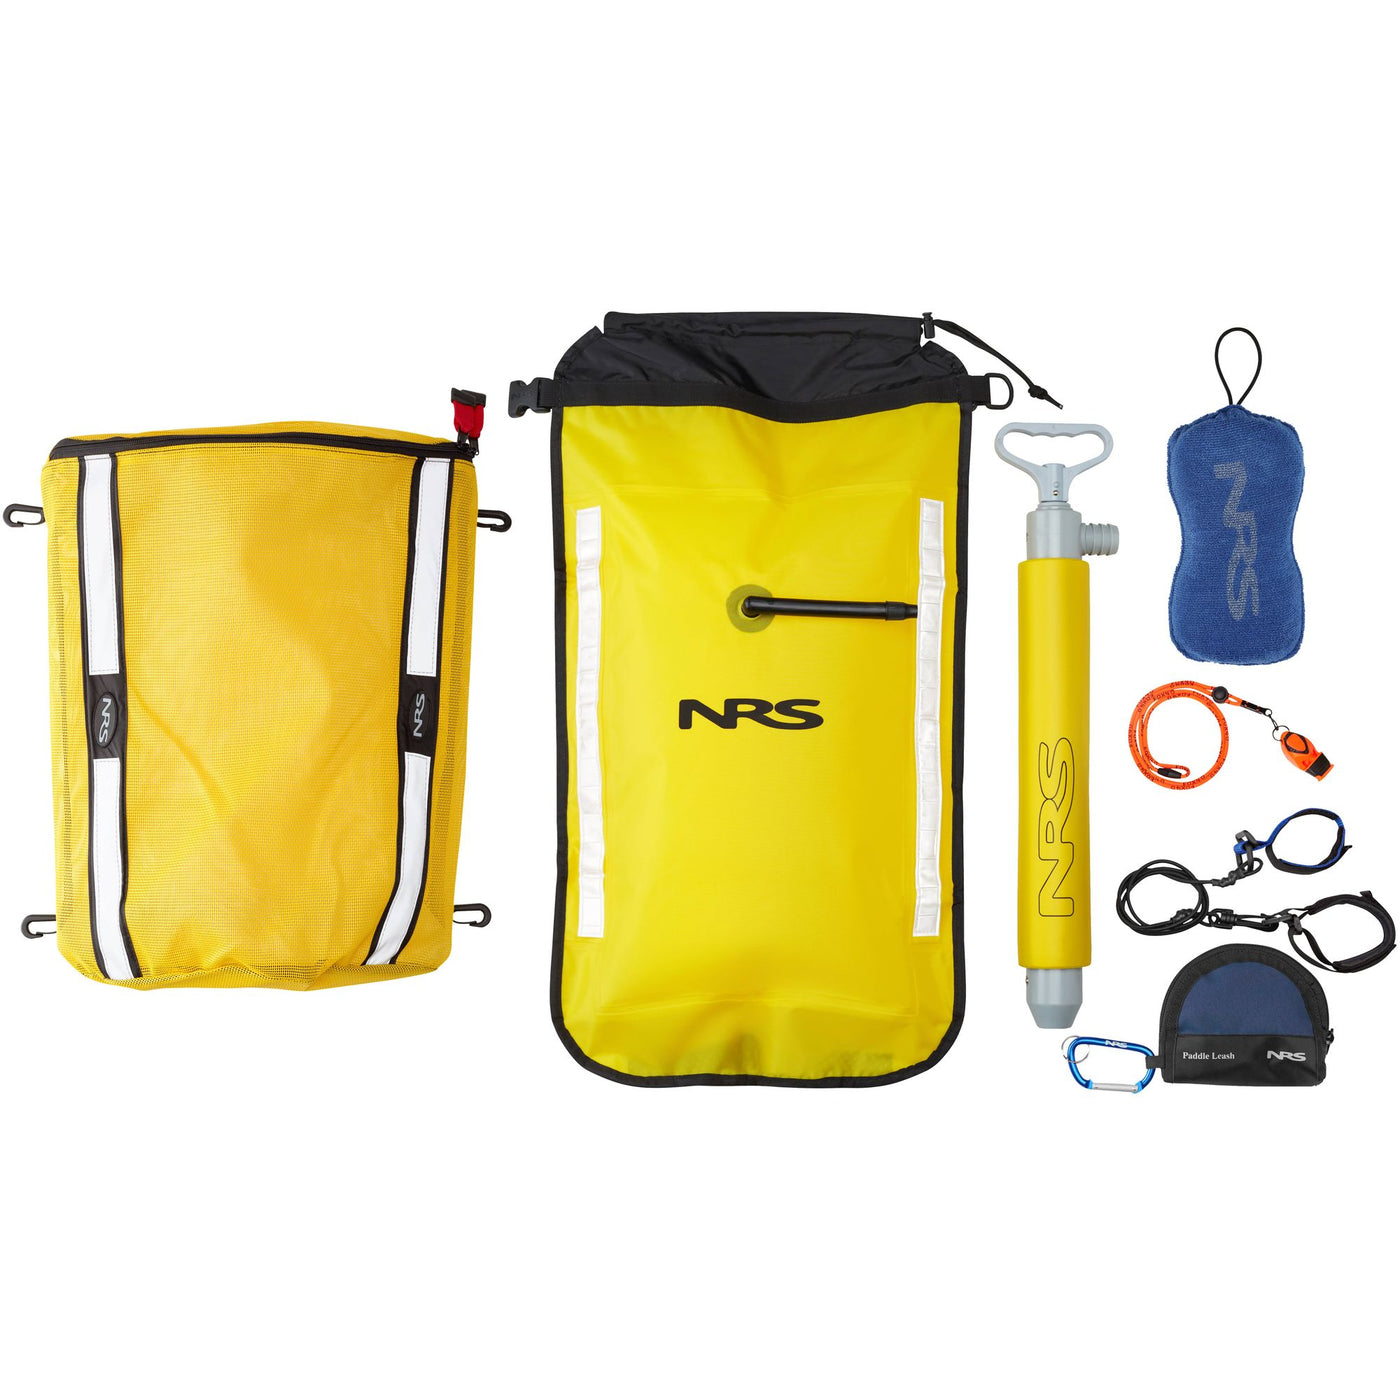 NRS Deluxe Touring Safety Kit, sikkerhetspakke